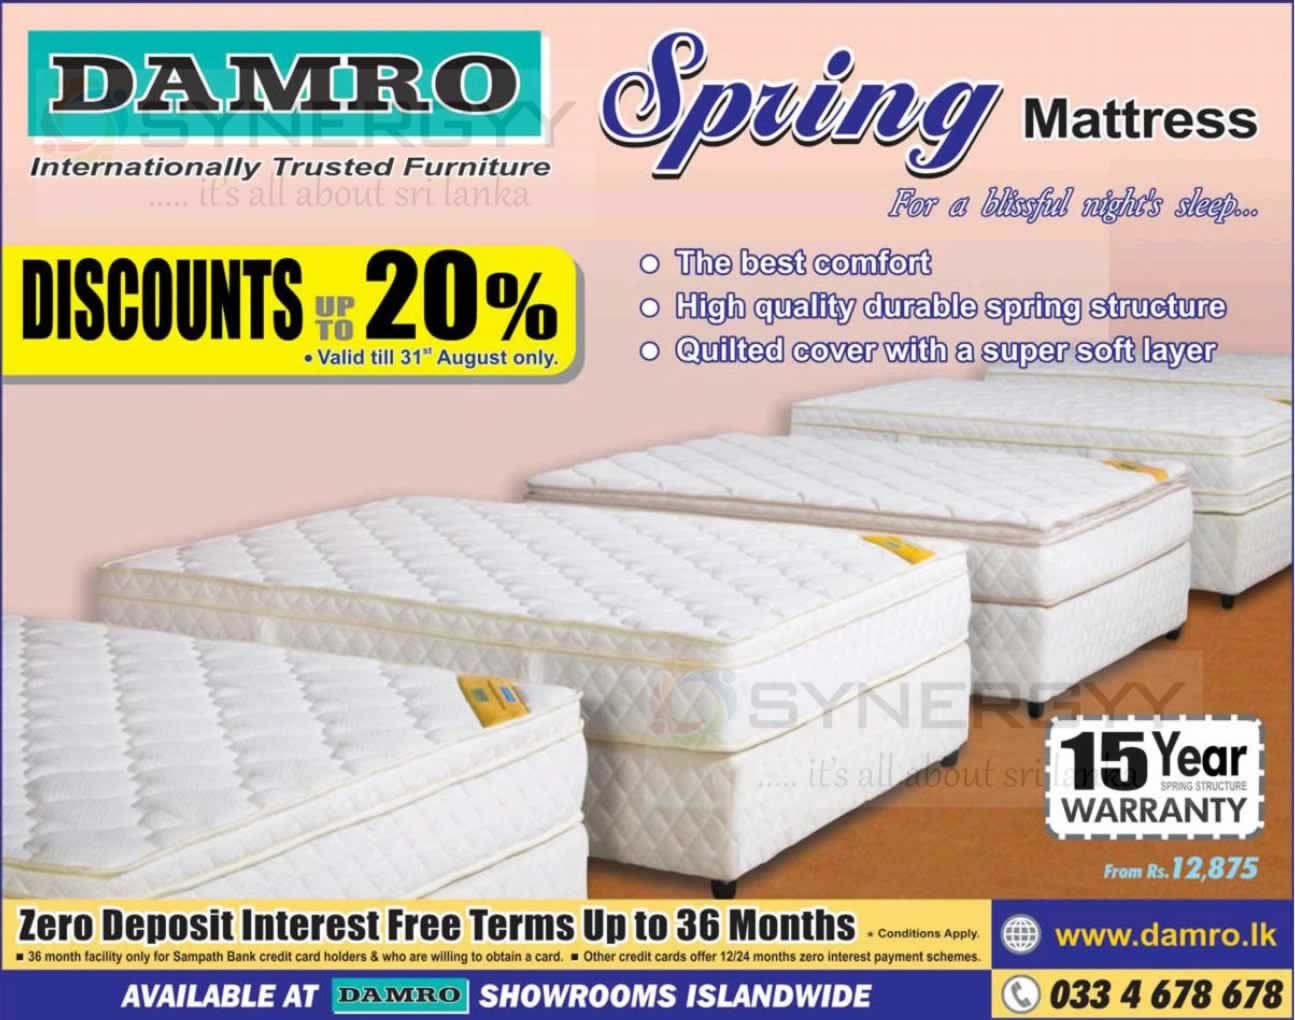 damro mattress prices in sri lanka